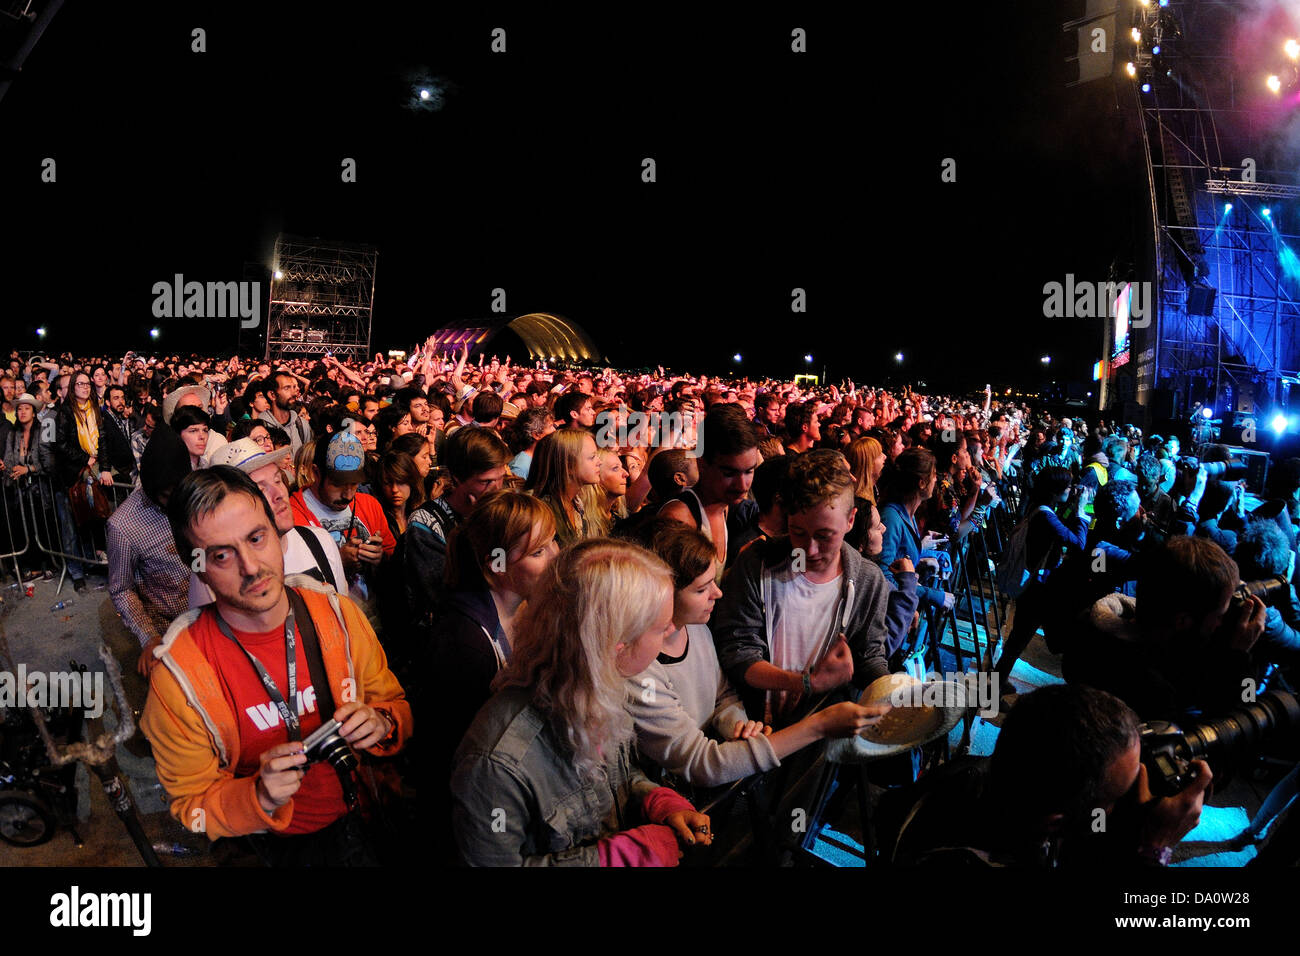 BARCELONA - 23 Mai: Crowd Uhr ein Konzert im Heineken Primavera Sound Festival 2013, Hauptbühne am 23. Mai 2013 in Barcelona. Stockfoto